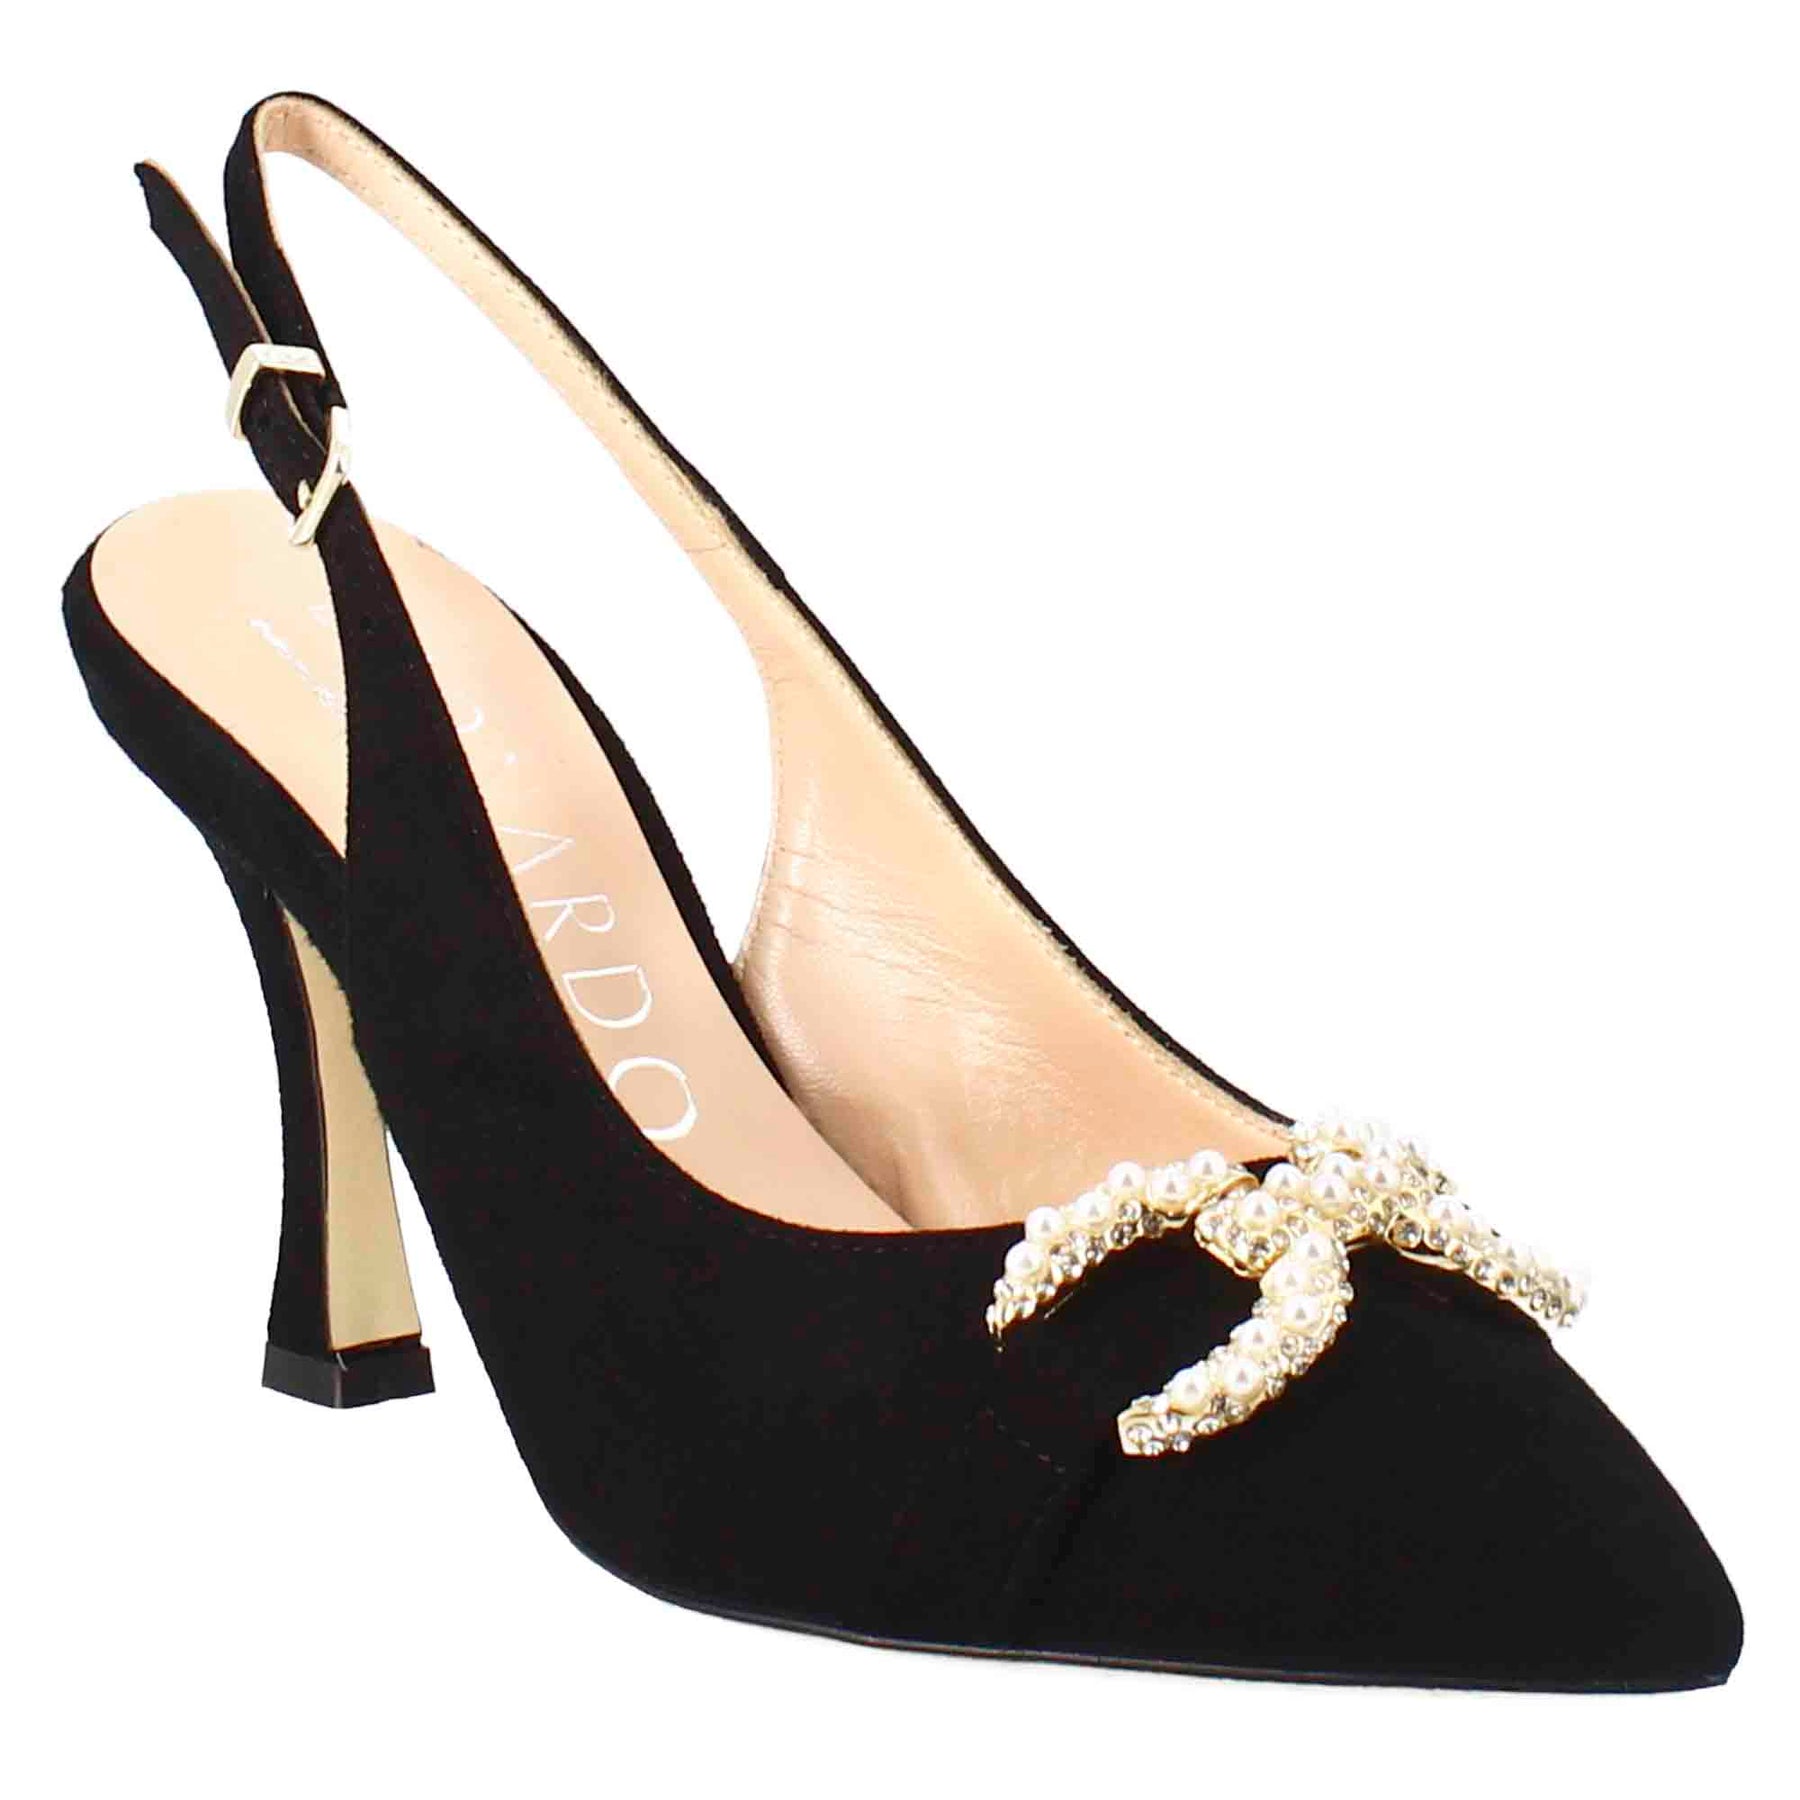 Sandalo da donna a forma in pelle scamosciata colore nero con glitter applicati